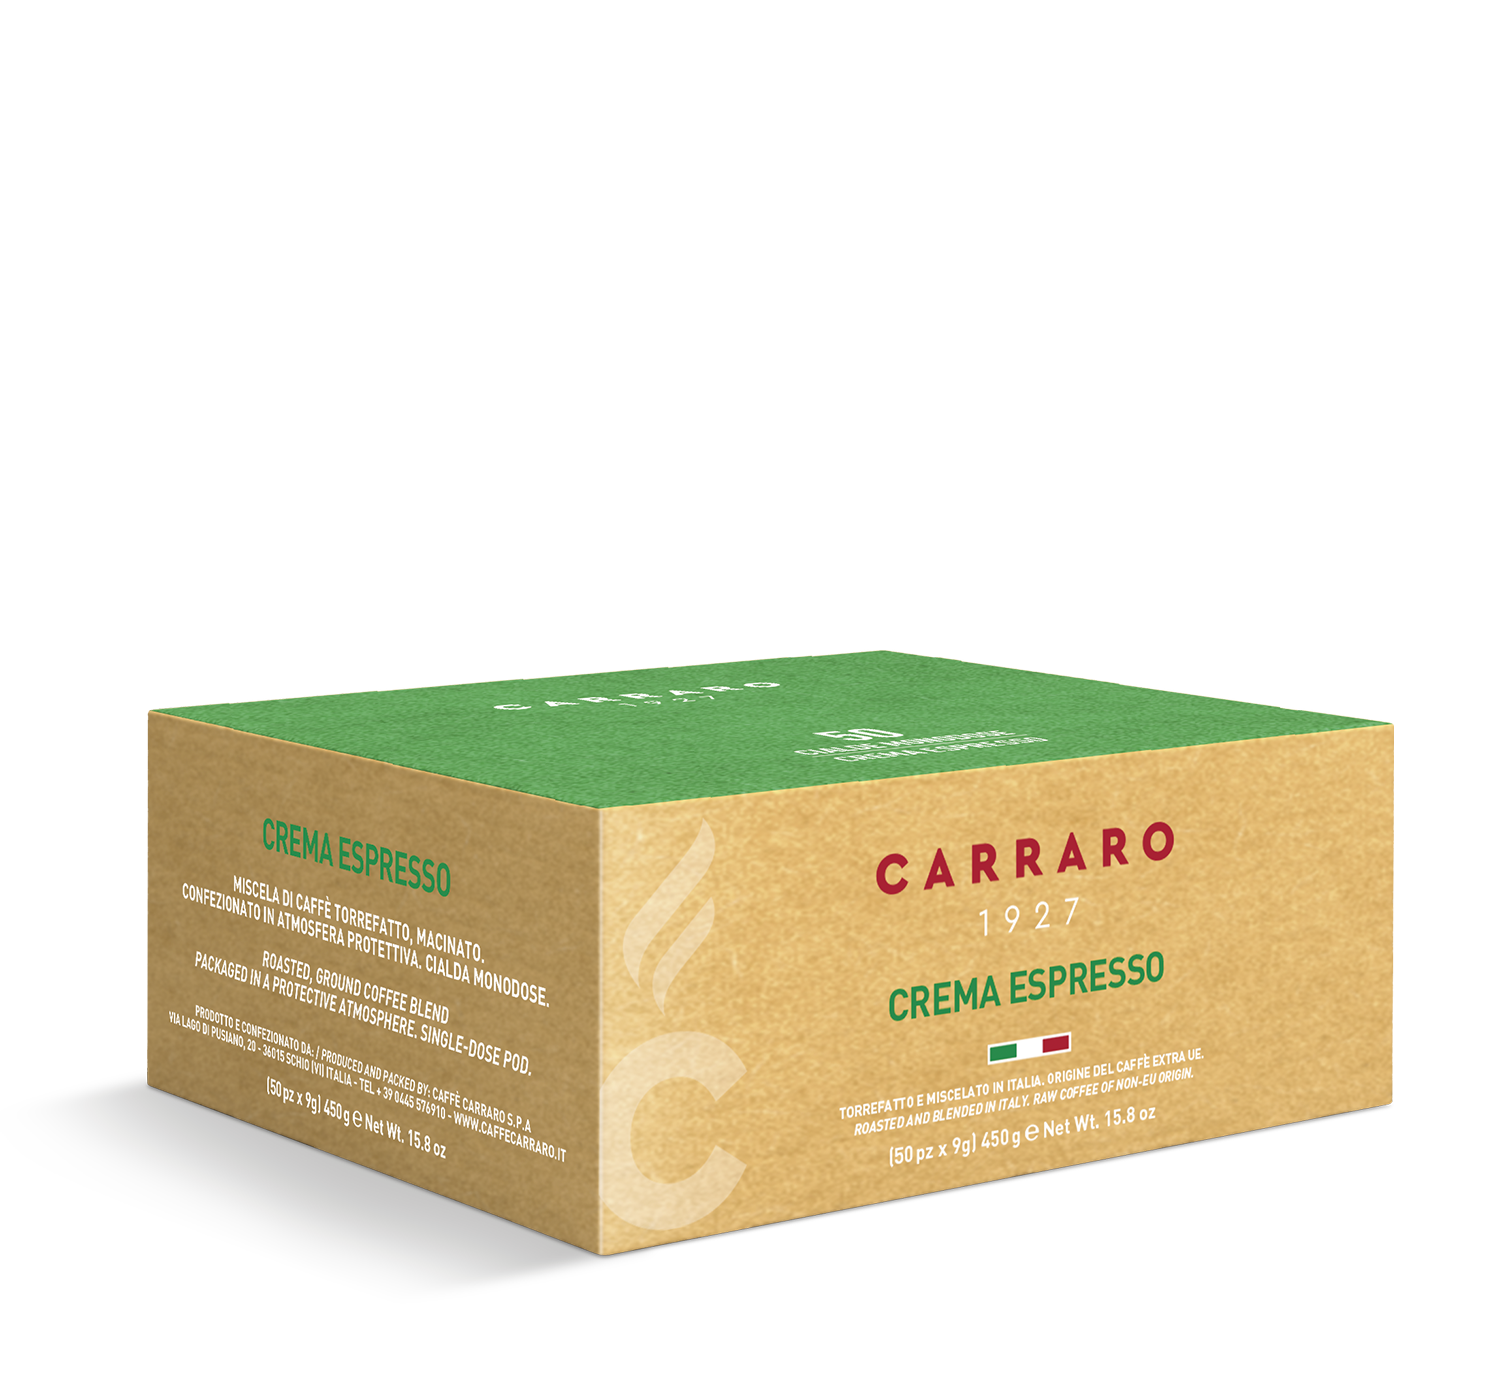 Crema espresso - Crema Espresso – 50 pods 9 g - Shop online Caffè Carraro